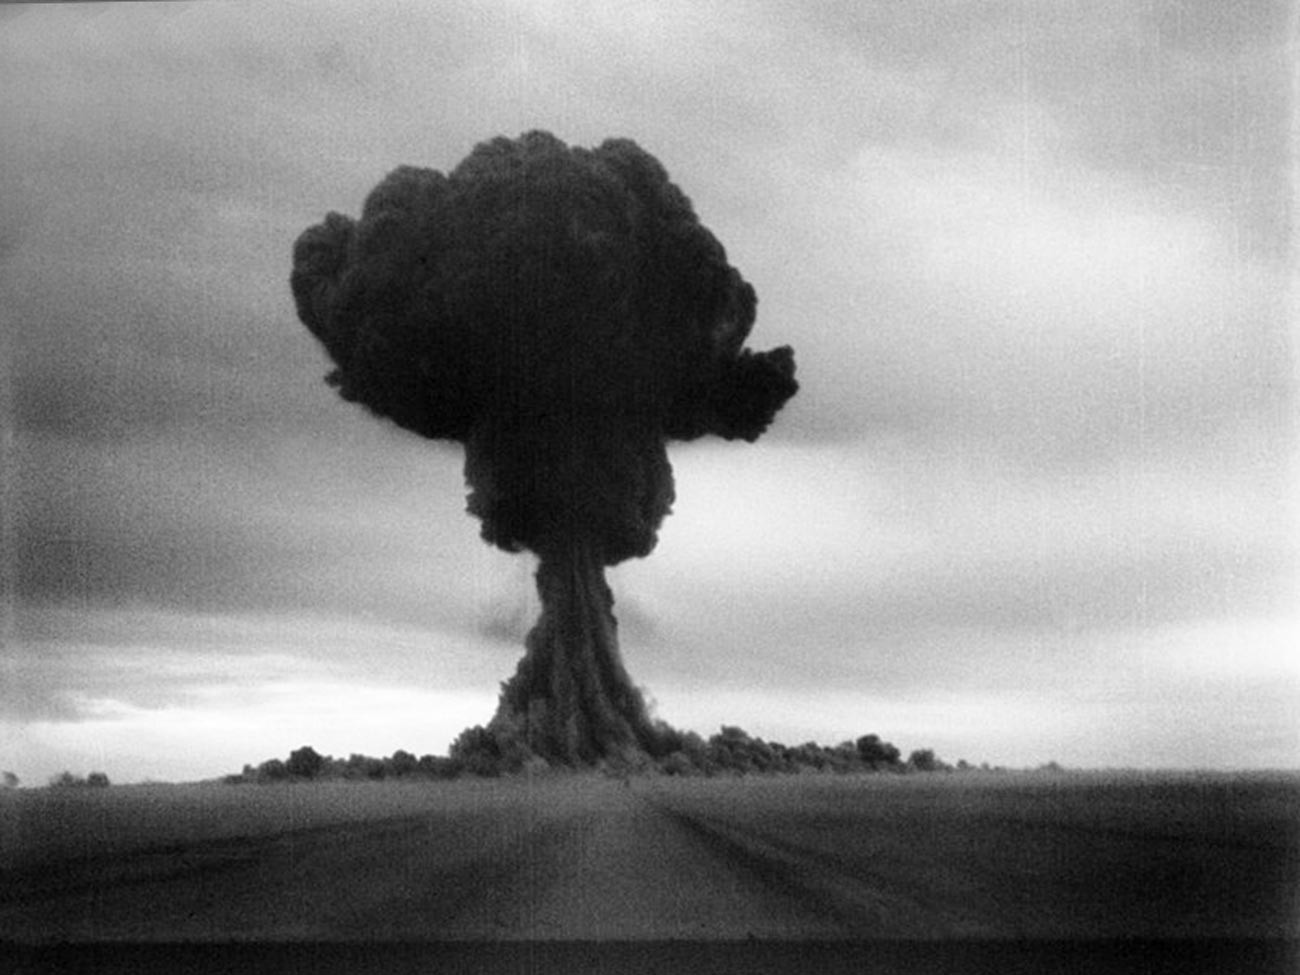 La primera prueba de la bomba atómica soviética 